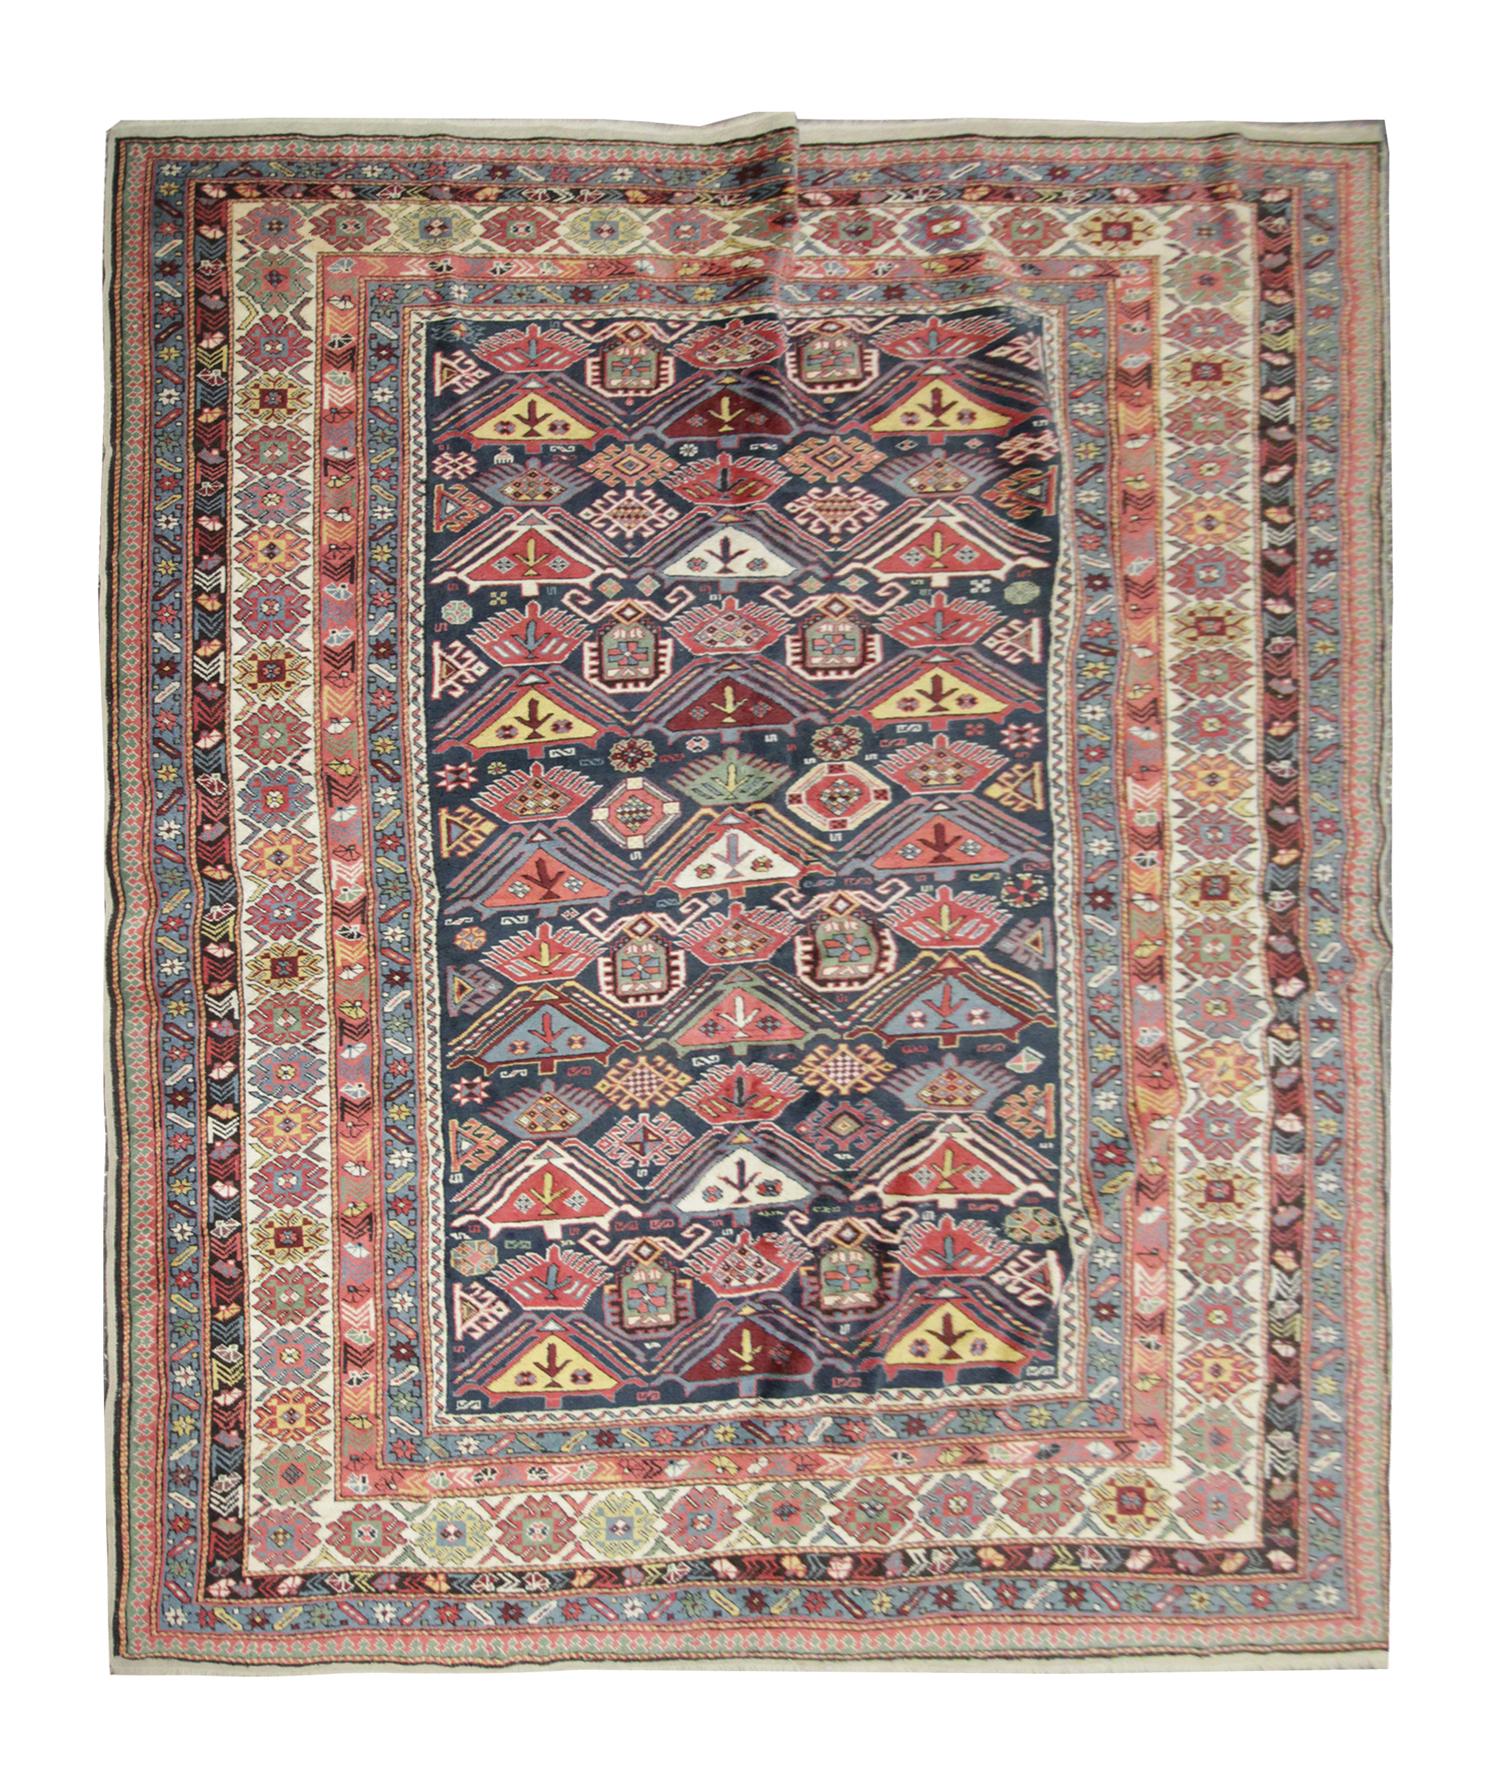 Ce tapis oriental provient de Shirvan, en Azerbaïdjan ; il a été tissé à la main avec de la laine filée à la main et teint avec des colorants végétaux 100 % biologiques. Avec une bordure multicouche et un motif symétrique, ce tapis se démarquera sur